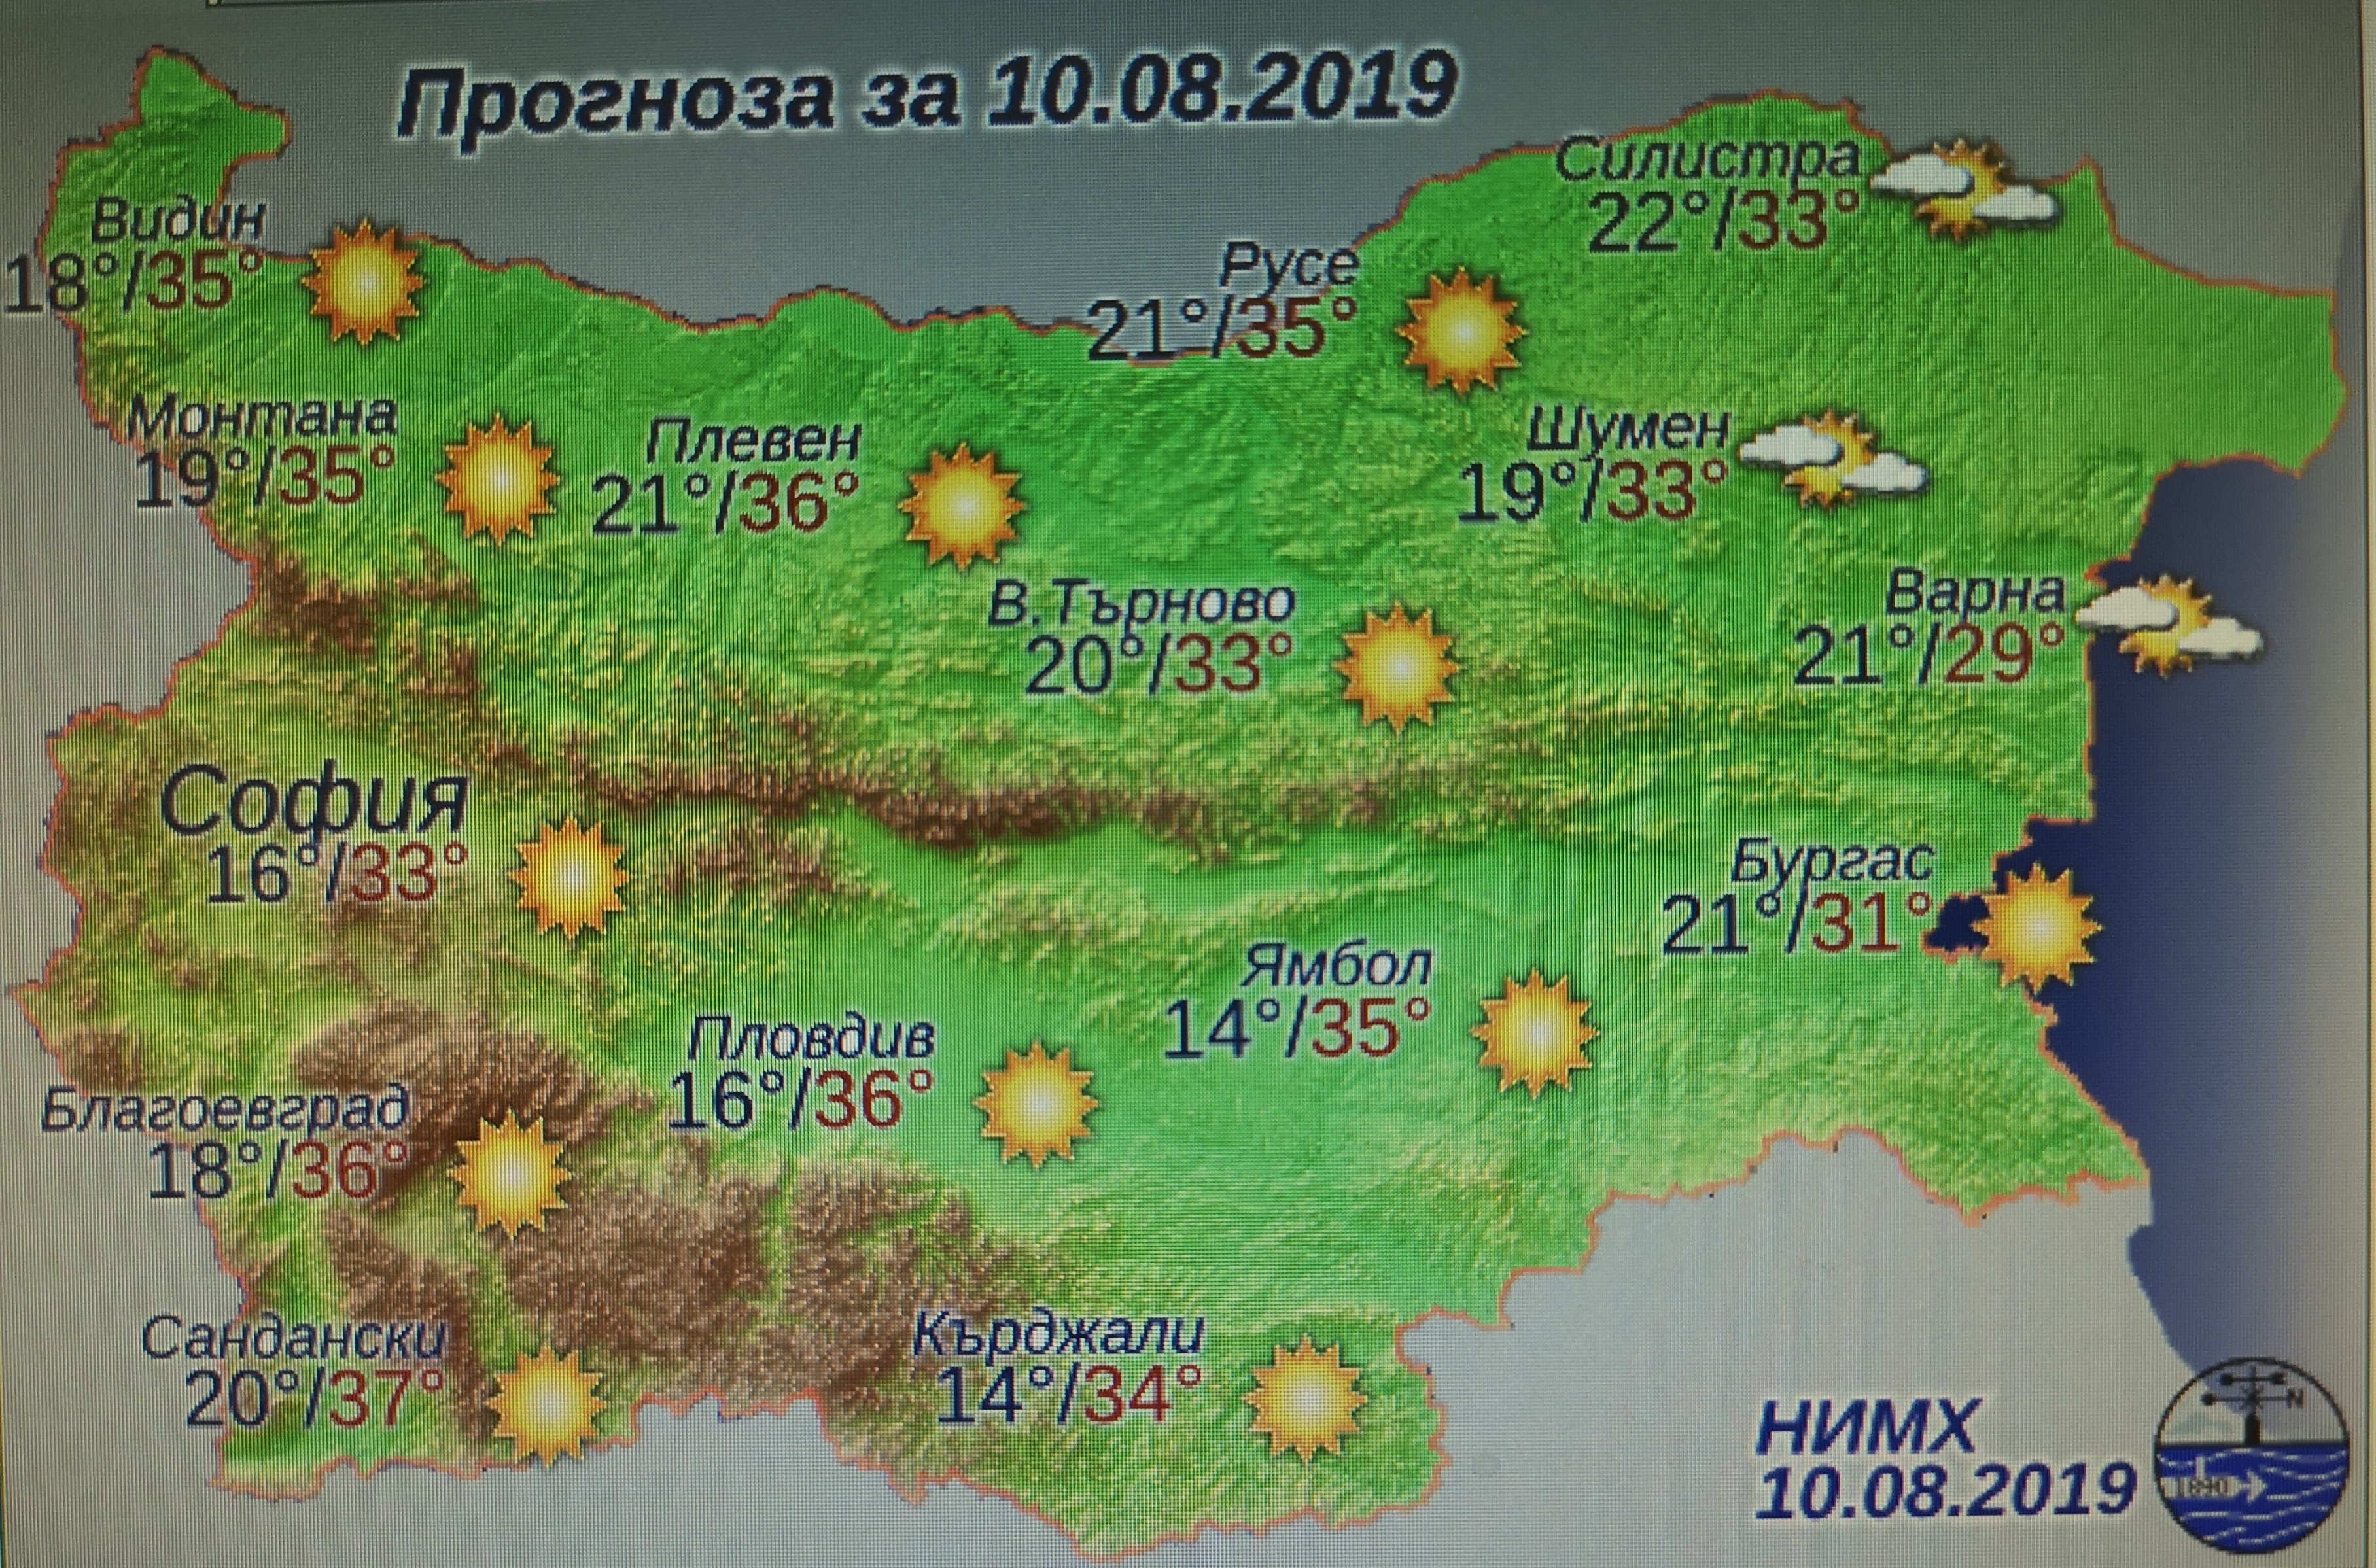    Жълт код за високи температури в Русенска и още 15 области